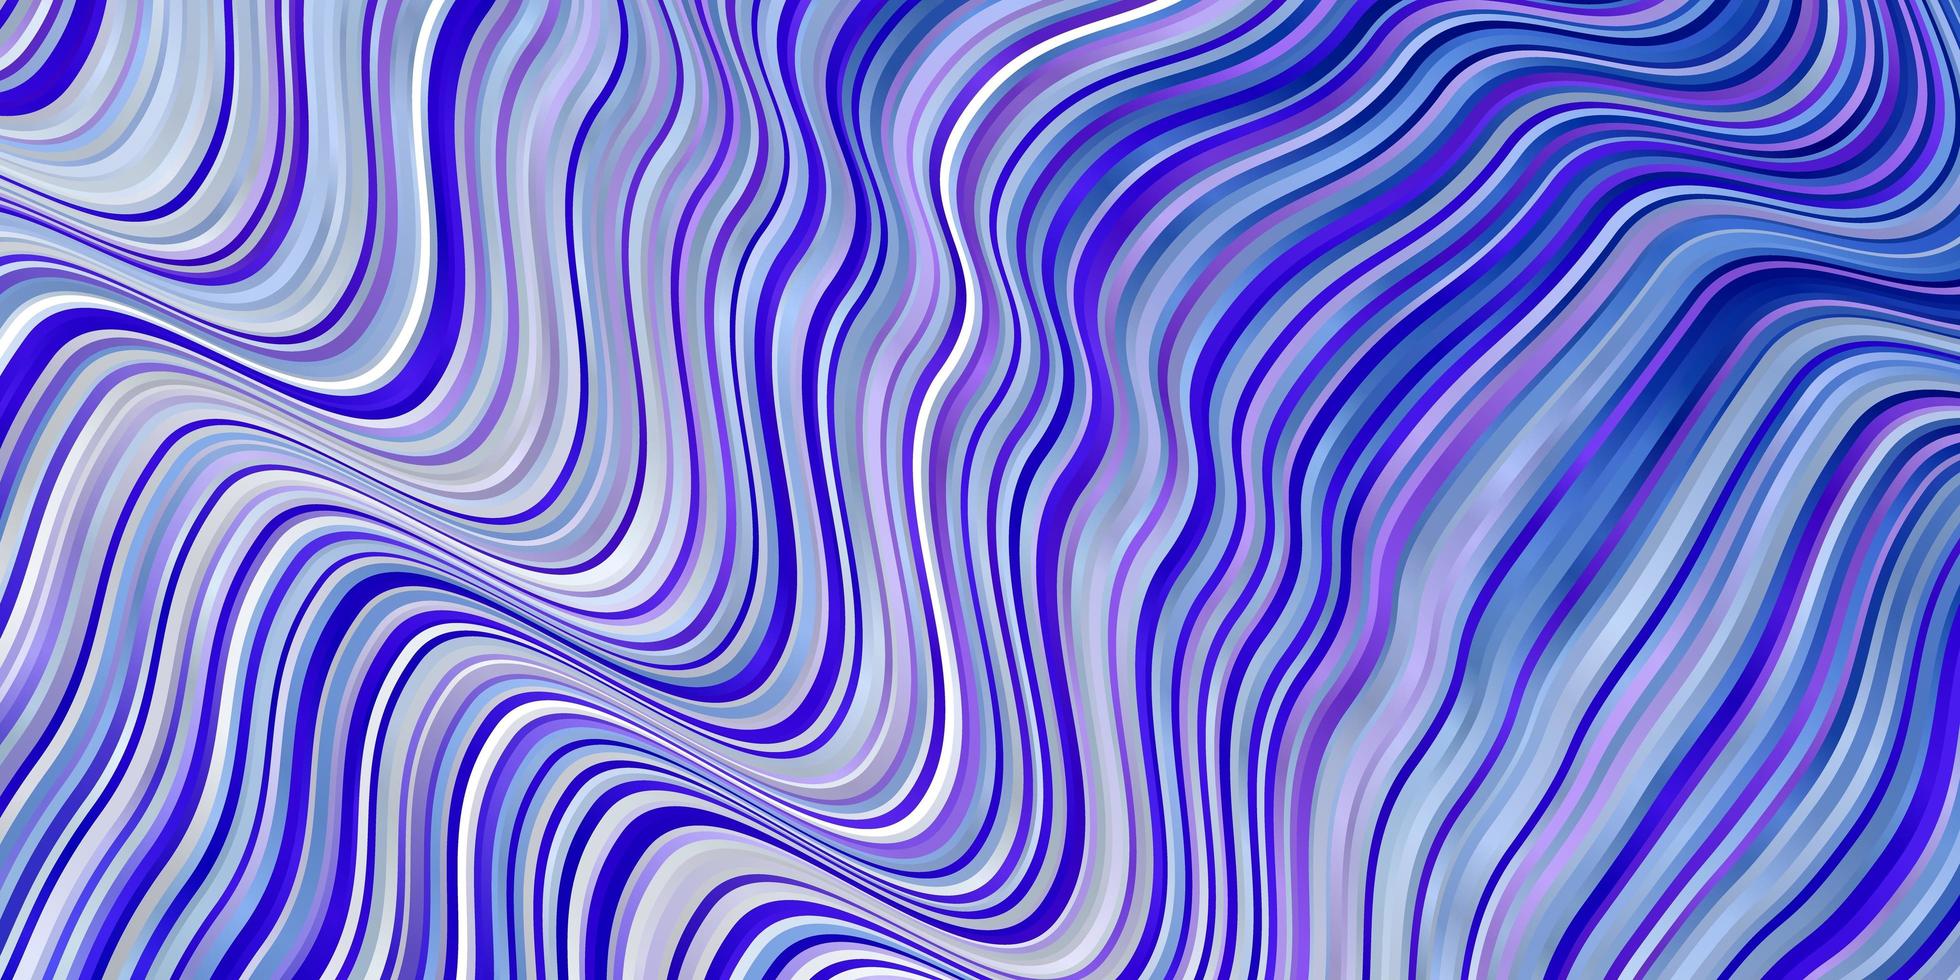 trama vettoriale blu rosa chiaro con curve illustrazione colorata con motivo a linee curve per annunci pubblicitari